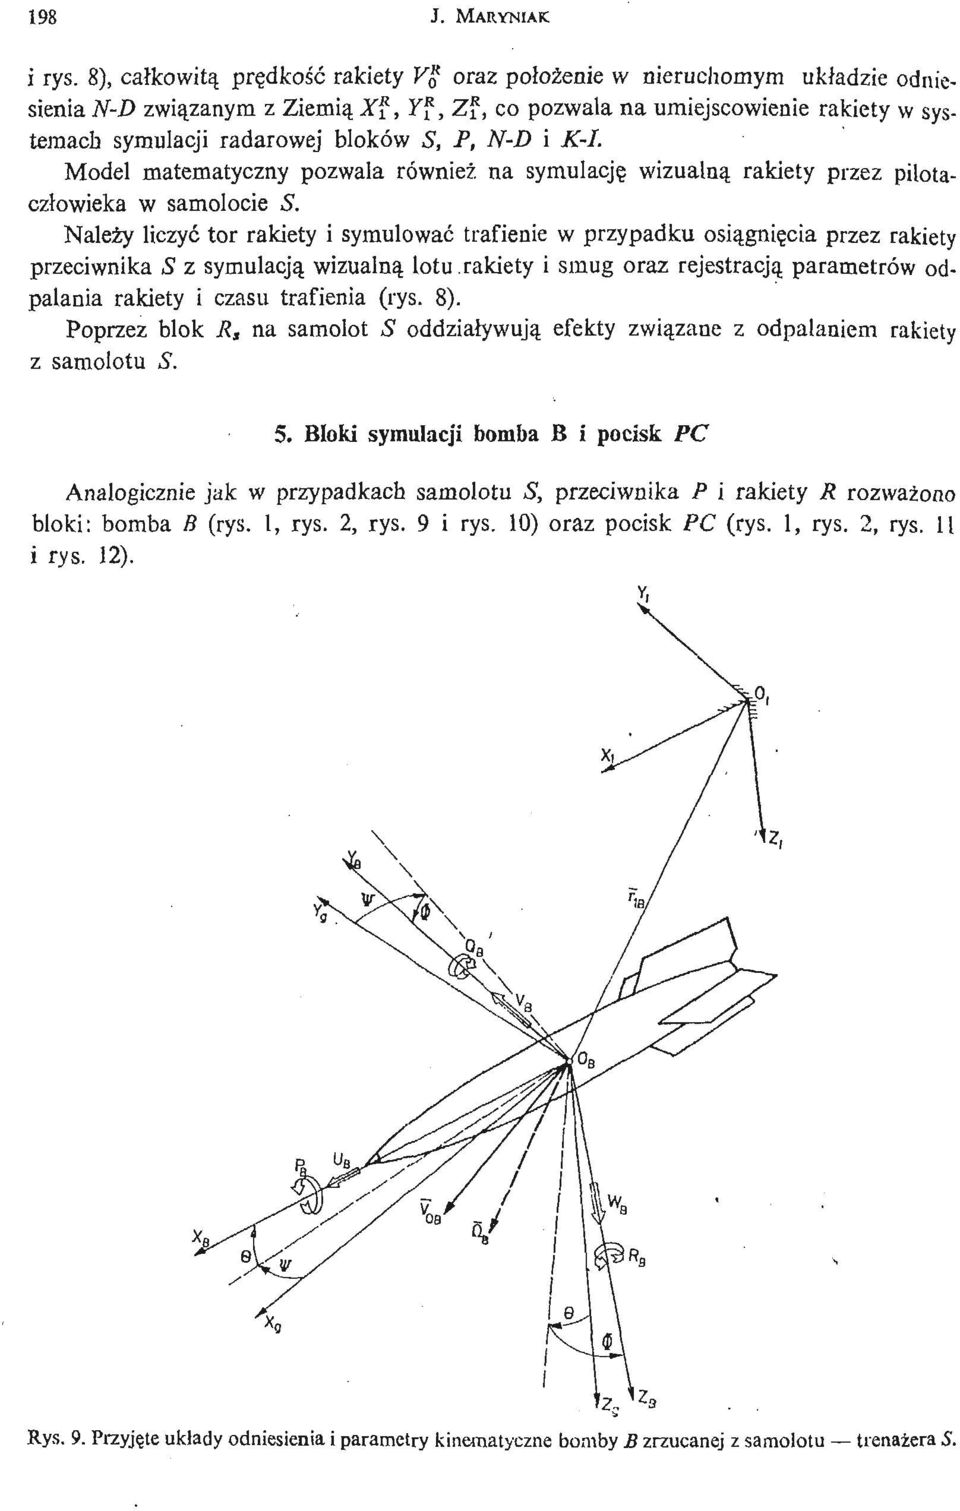 Model matematyczny pozwala również na symulację wizualną rakiety przez pilotaczł owieka w samolocie S.